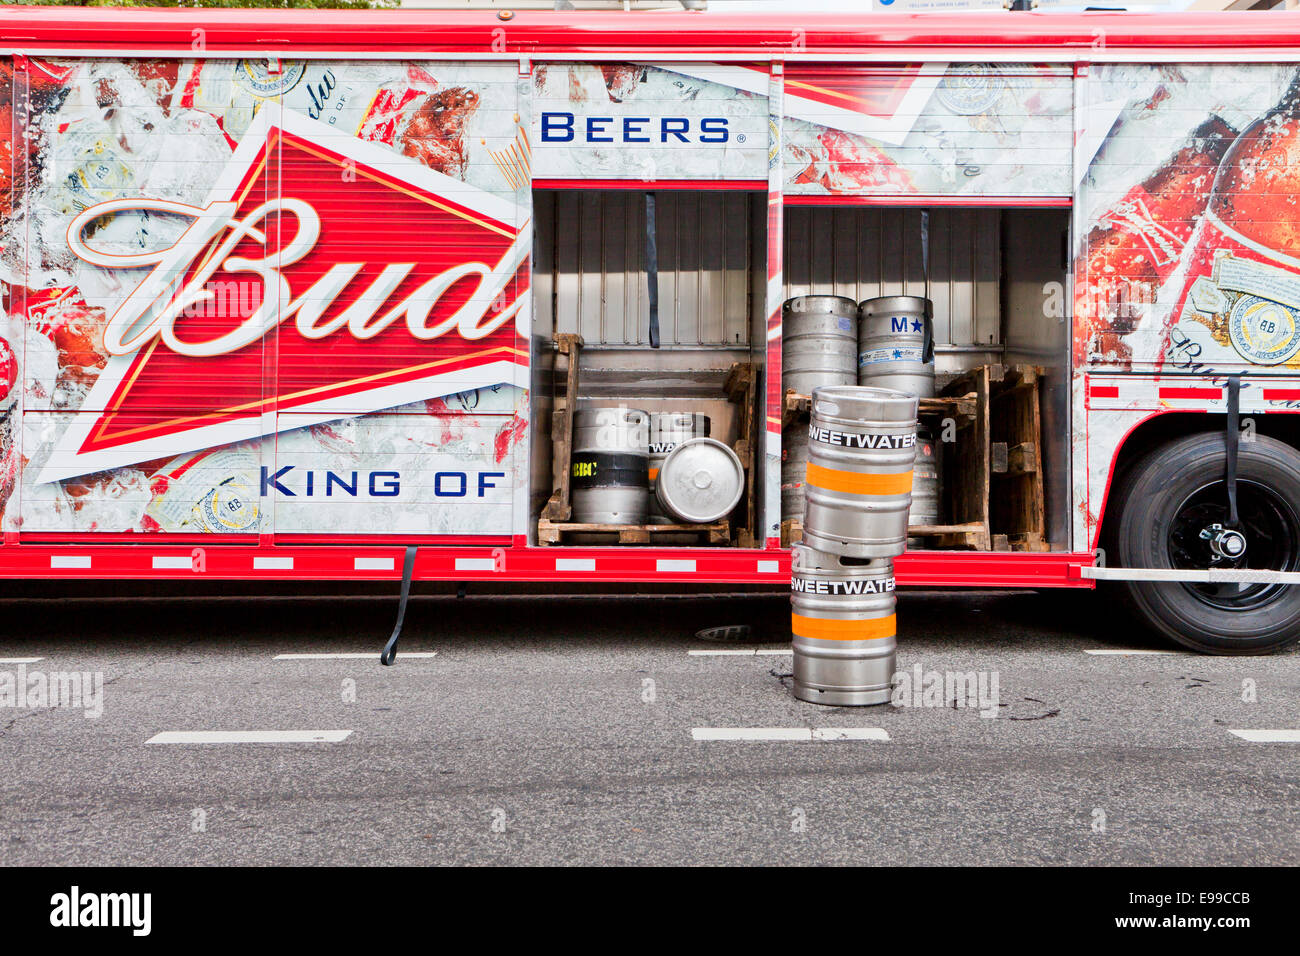 Camion de livraison de bière Budweiser - USA Banque D'Images